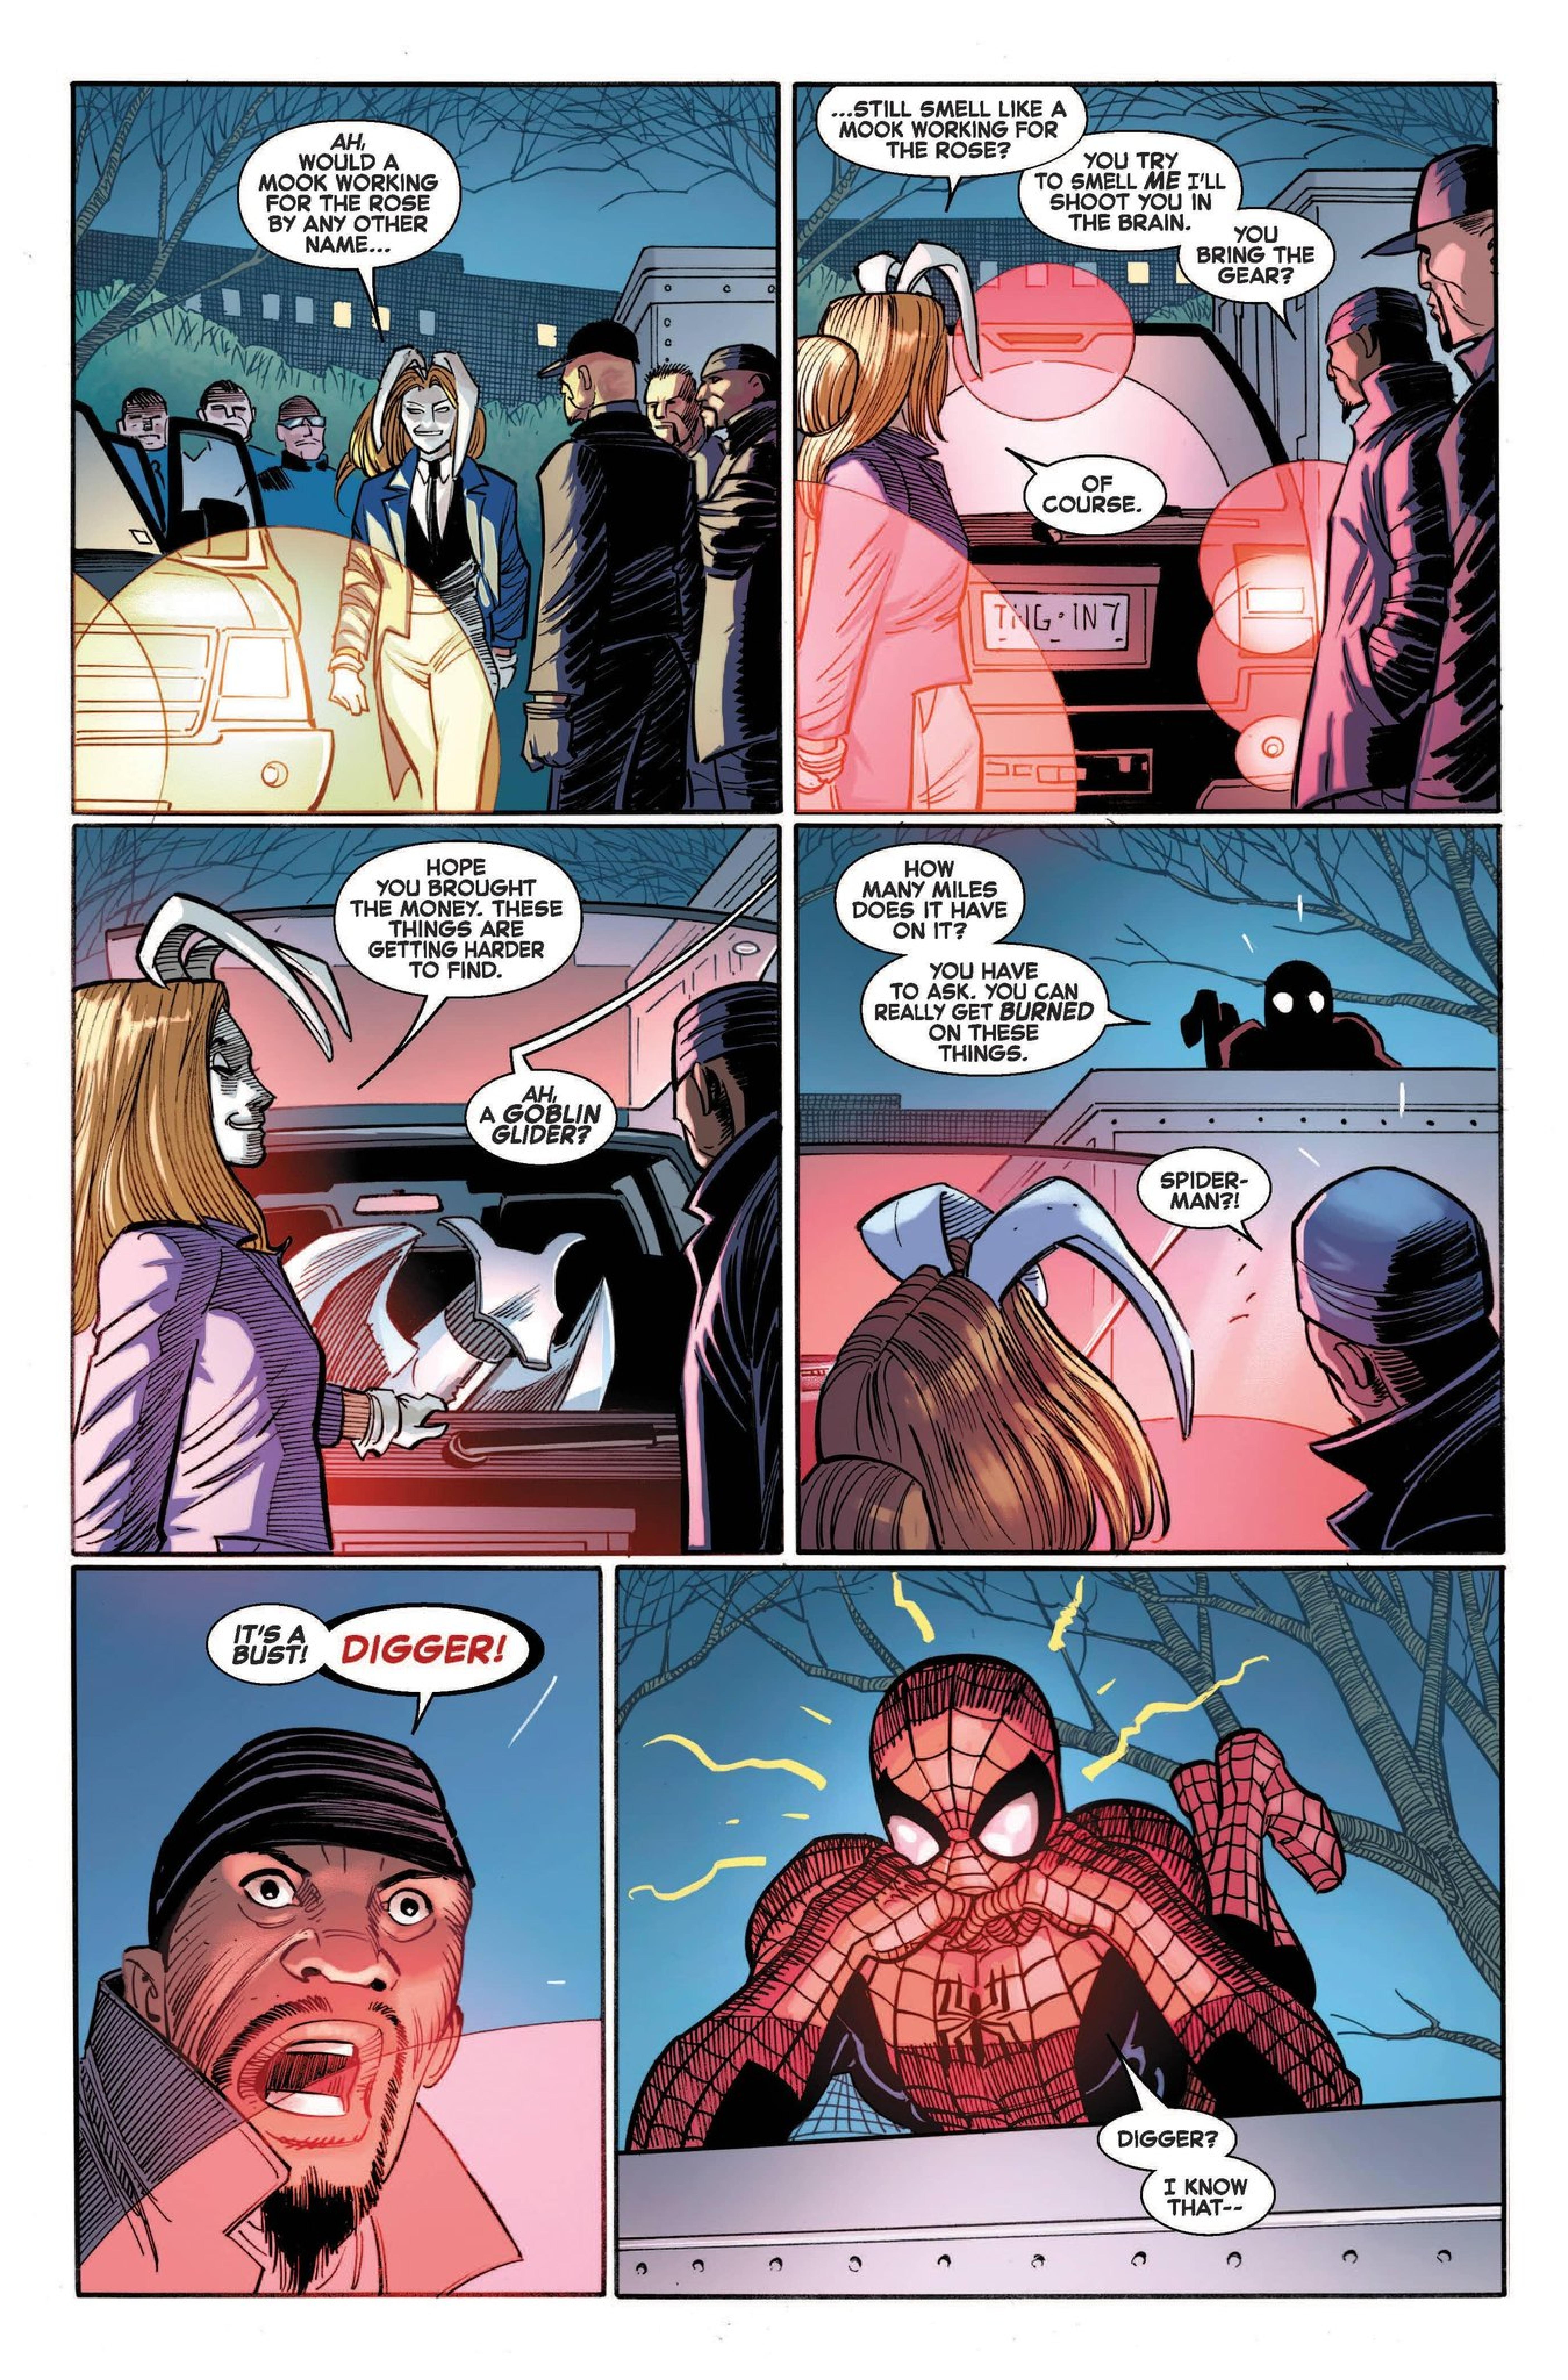 Amazing Spider-Man #1 (2022)